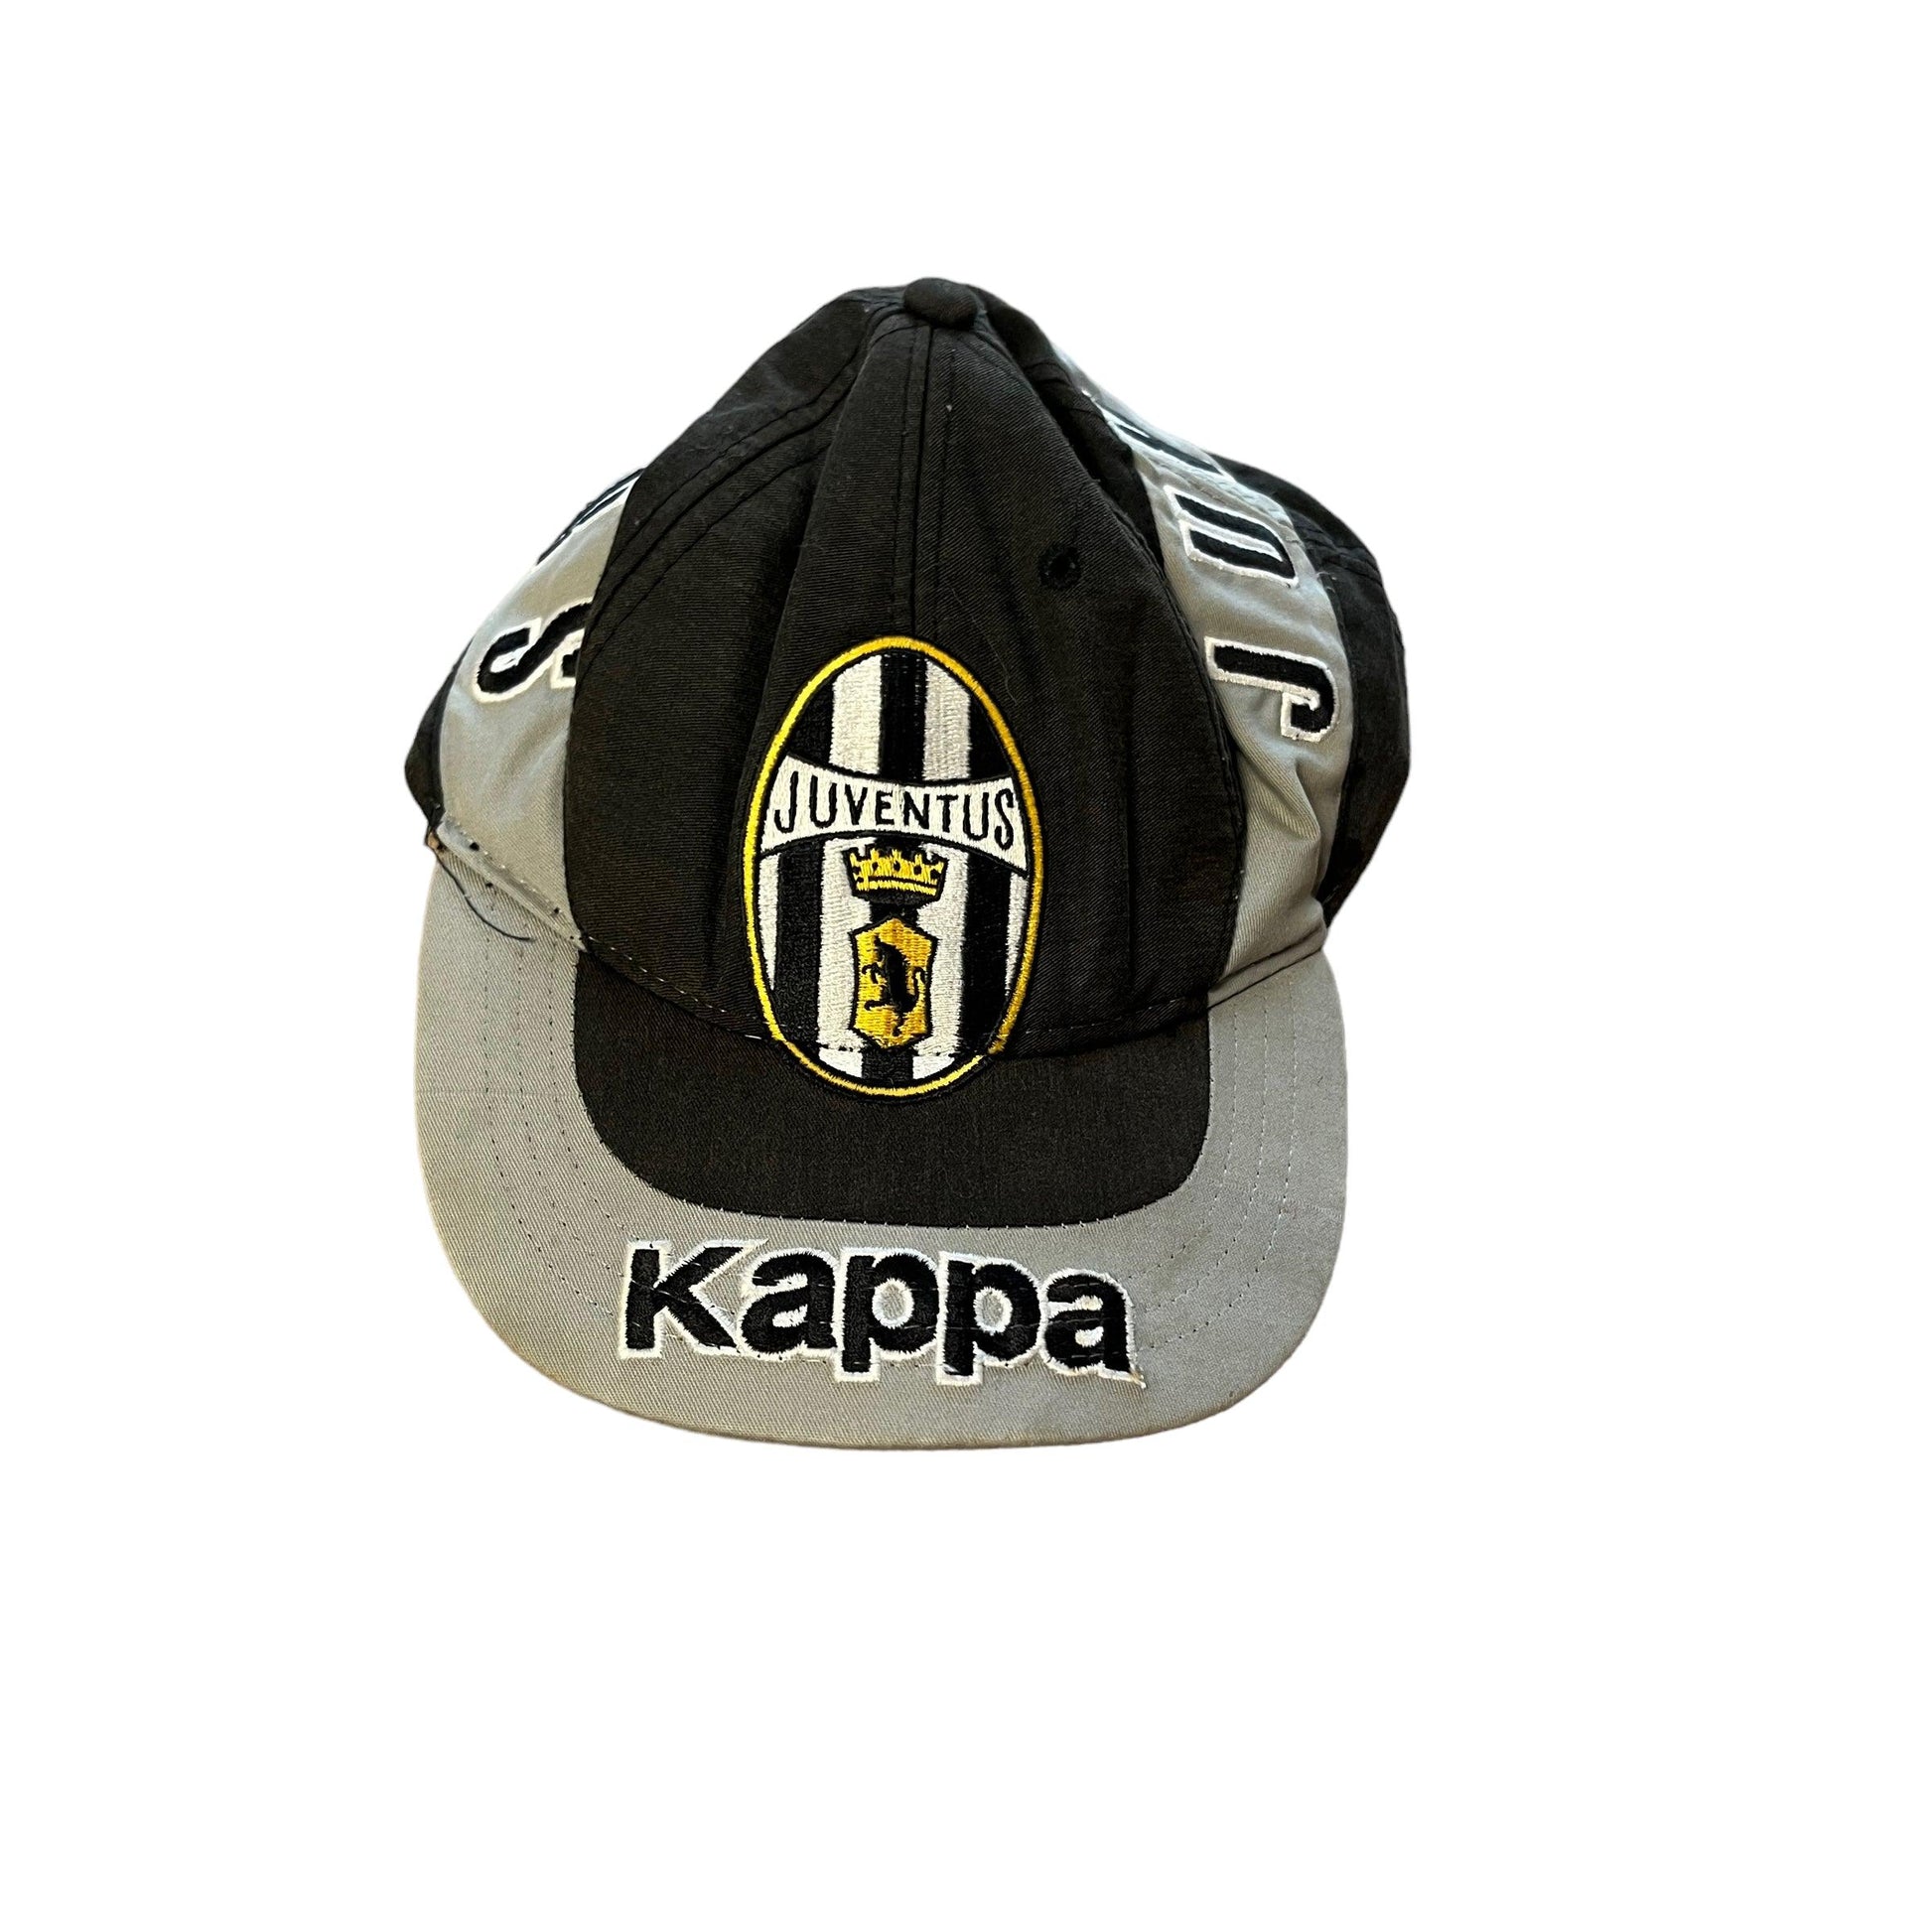 Vintage 90s Grey + Black Kappa Juventus Football Cap - The Streetwear Studio